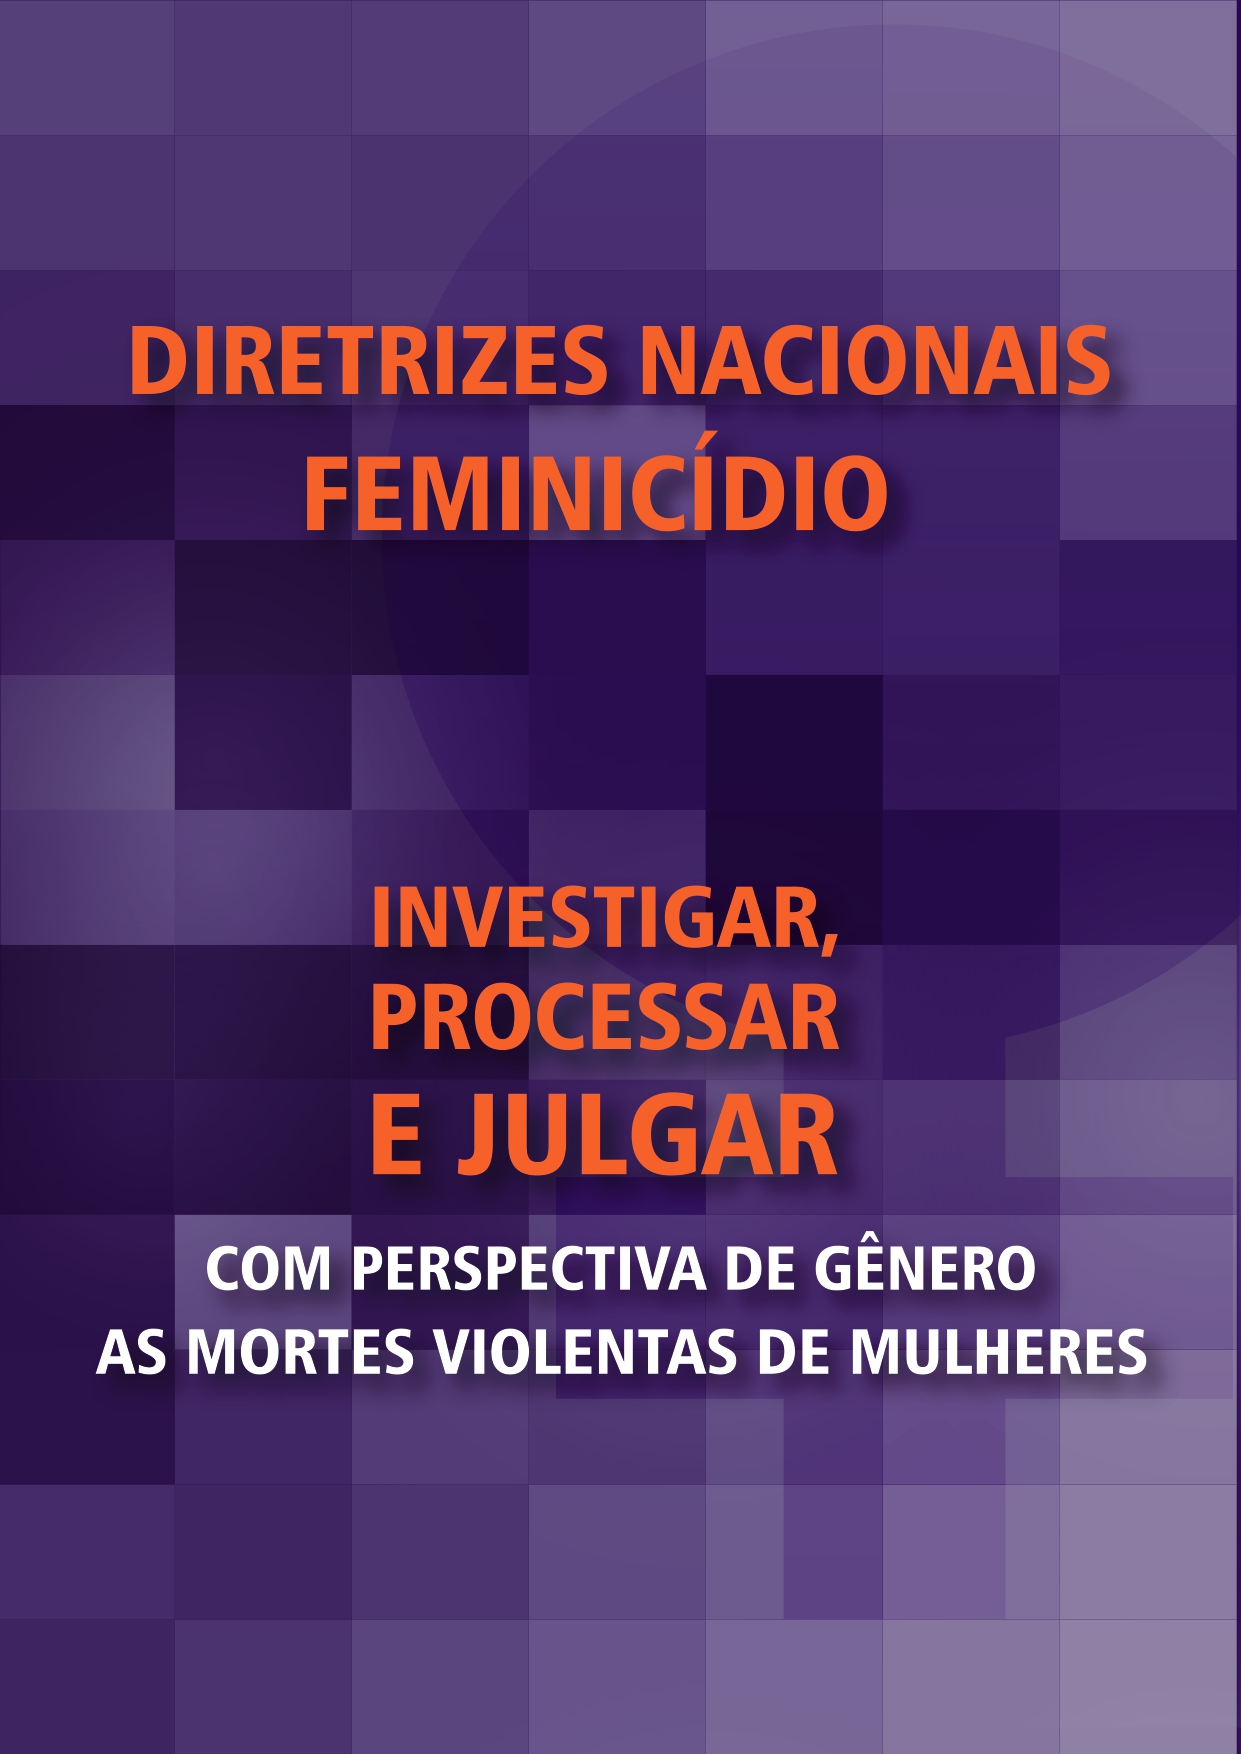 Diretrizes Nacionais para Investigar, Processar e Julgar com Perspectiva de Gênero as Mortes Violentas de Mulheres